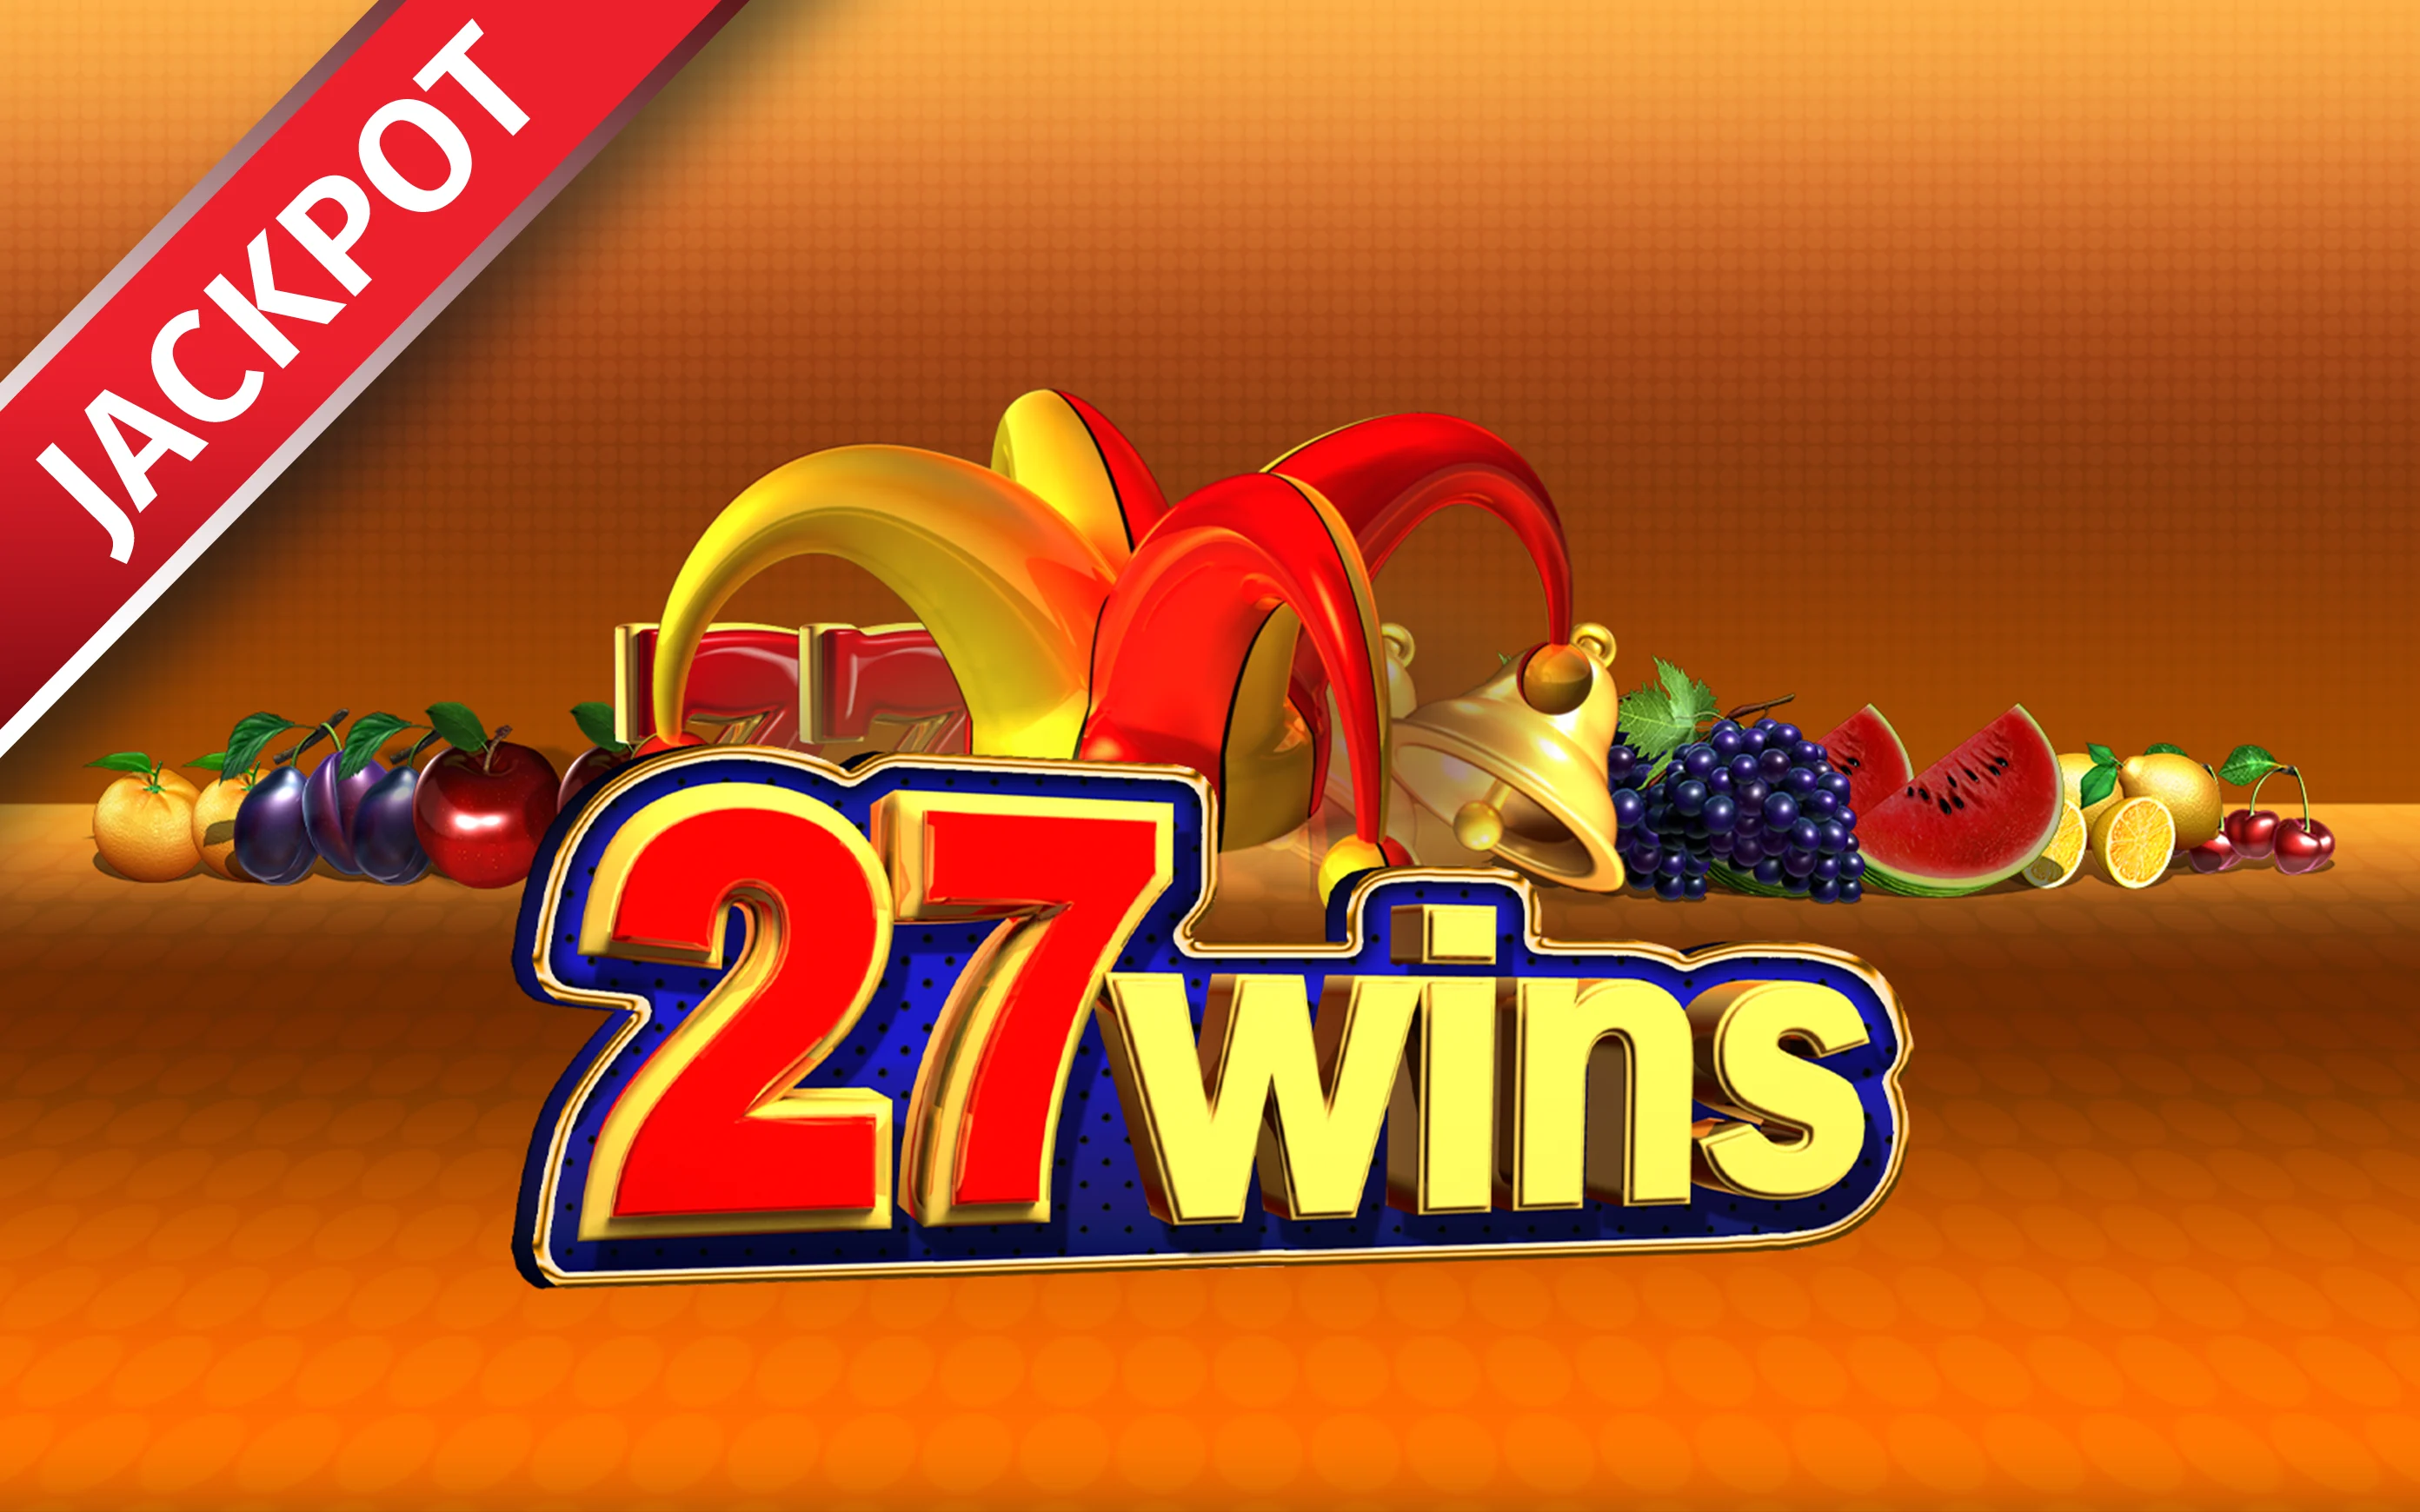 Παίξτε 27 Wins στο online καζίνο Starcasino.be